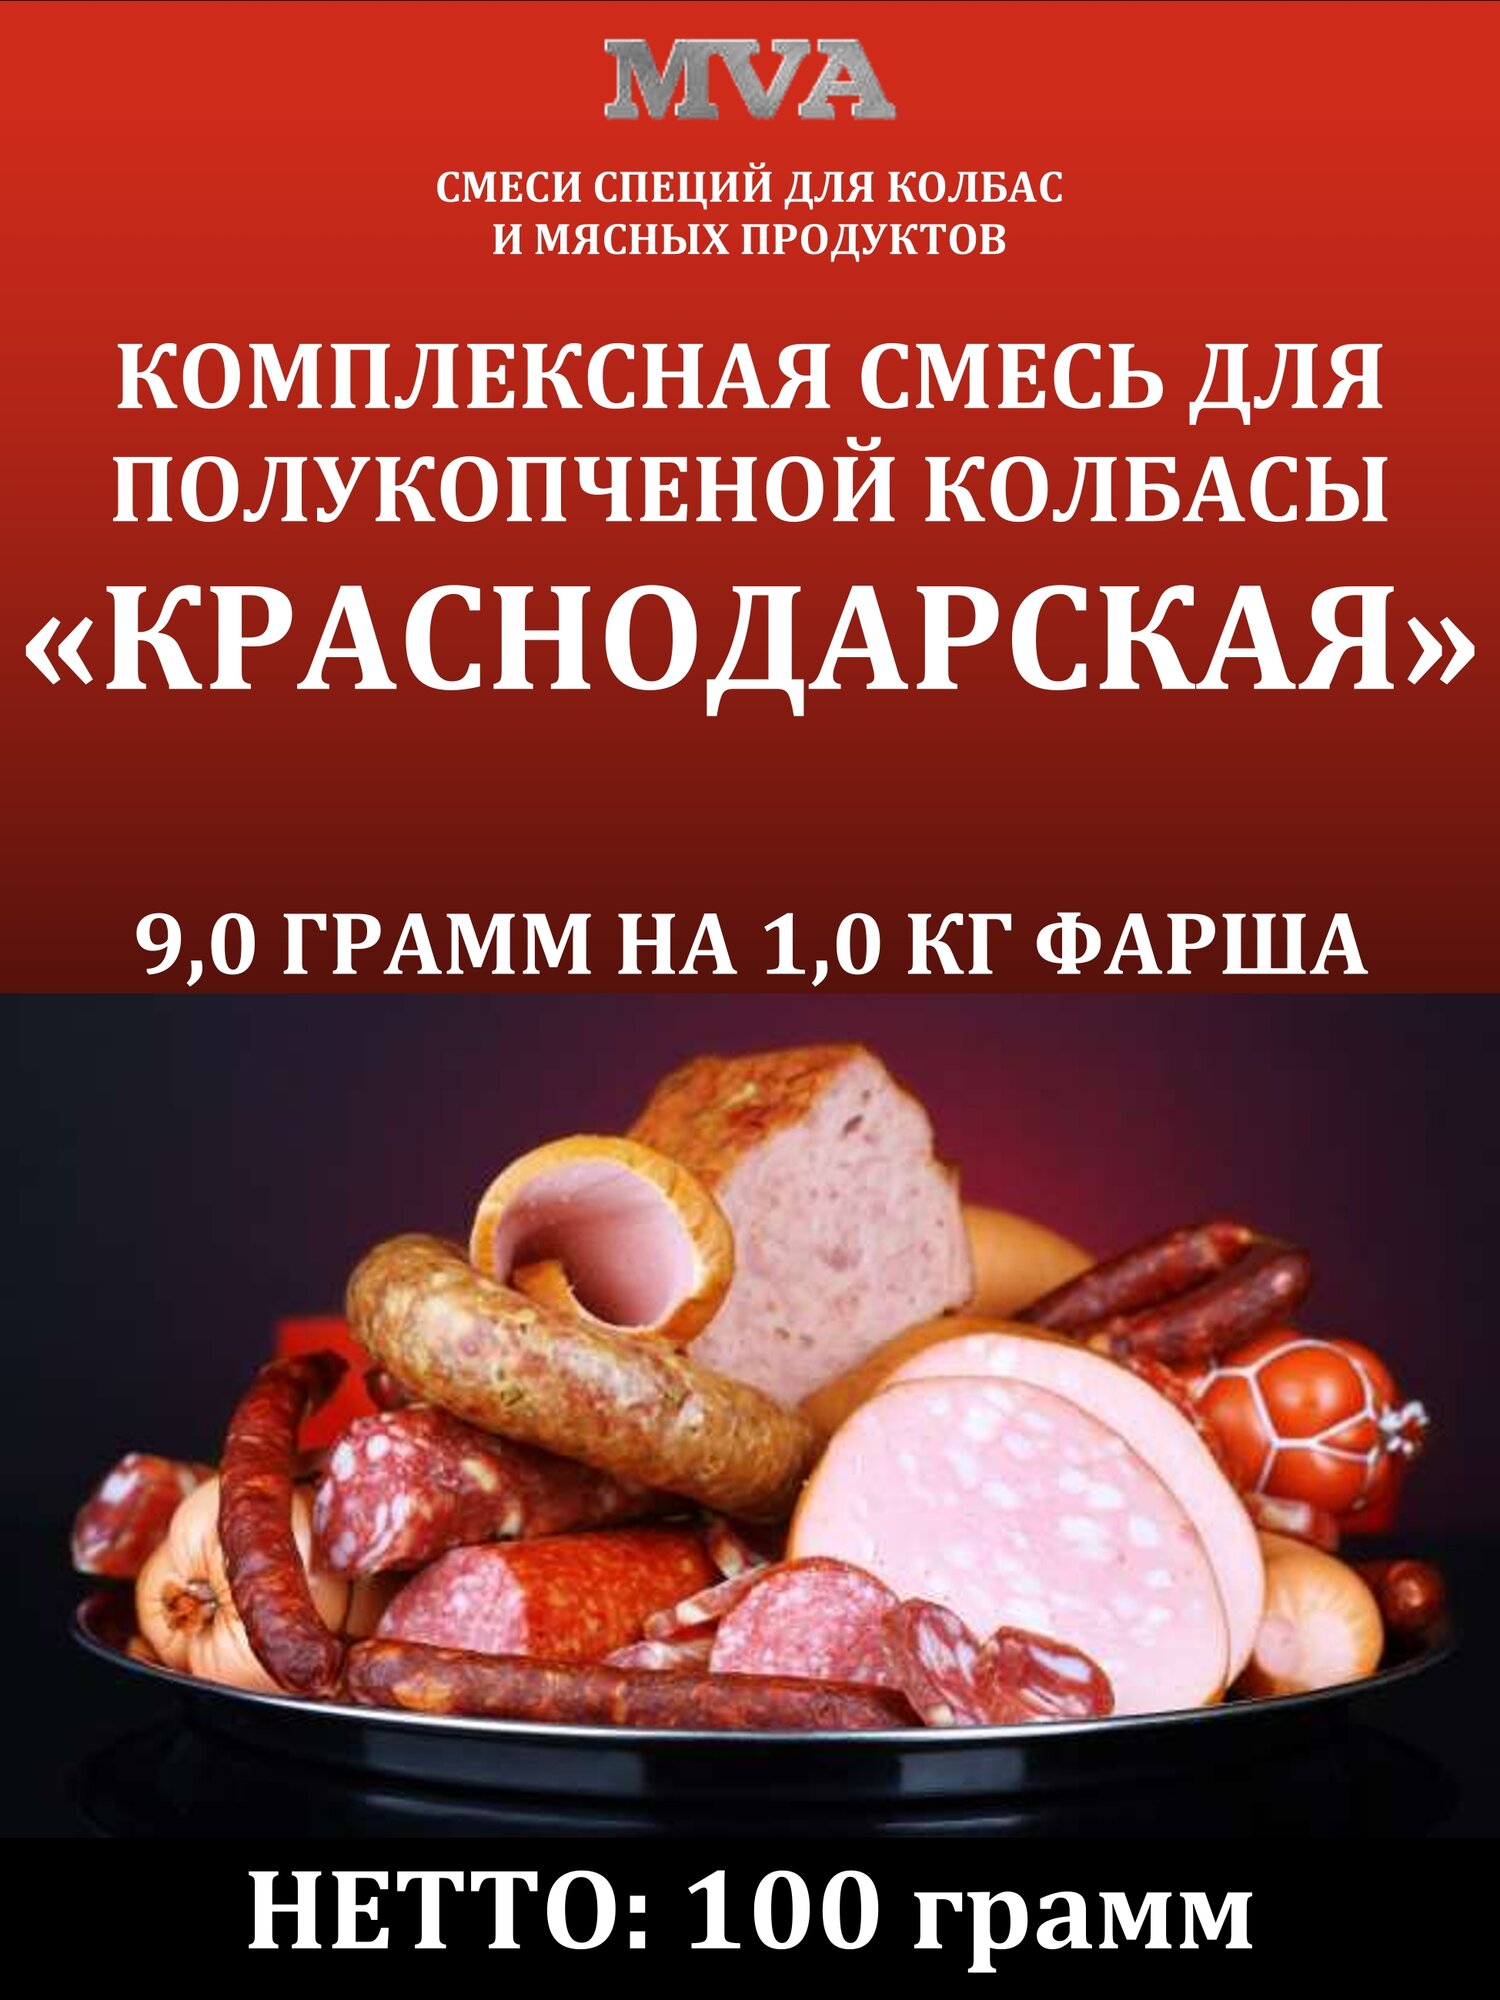 Комплексная смесь для полукопченой колбасы "Краснодарская"